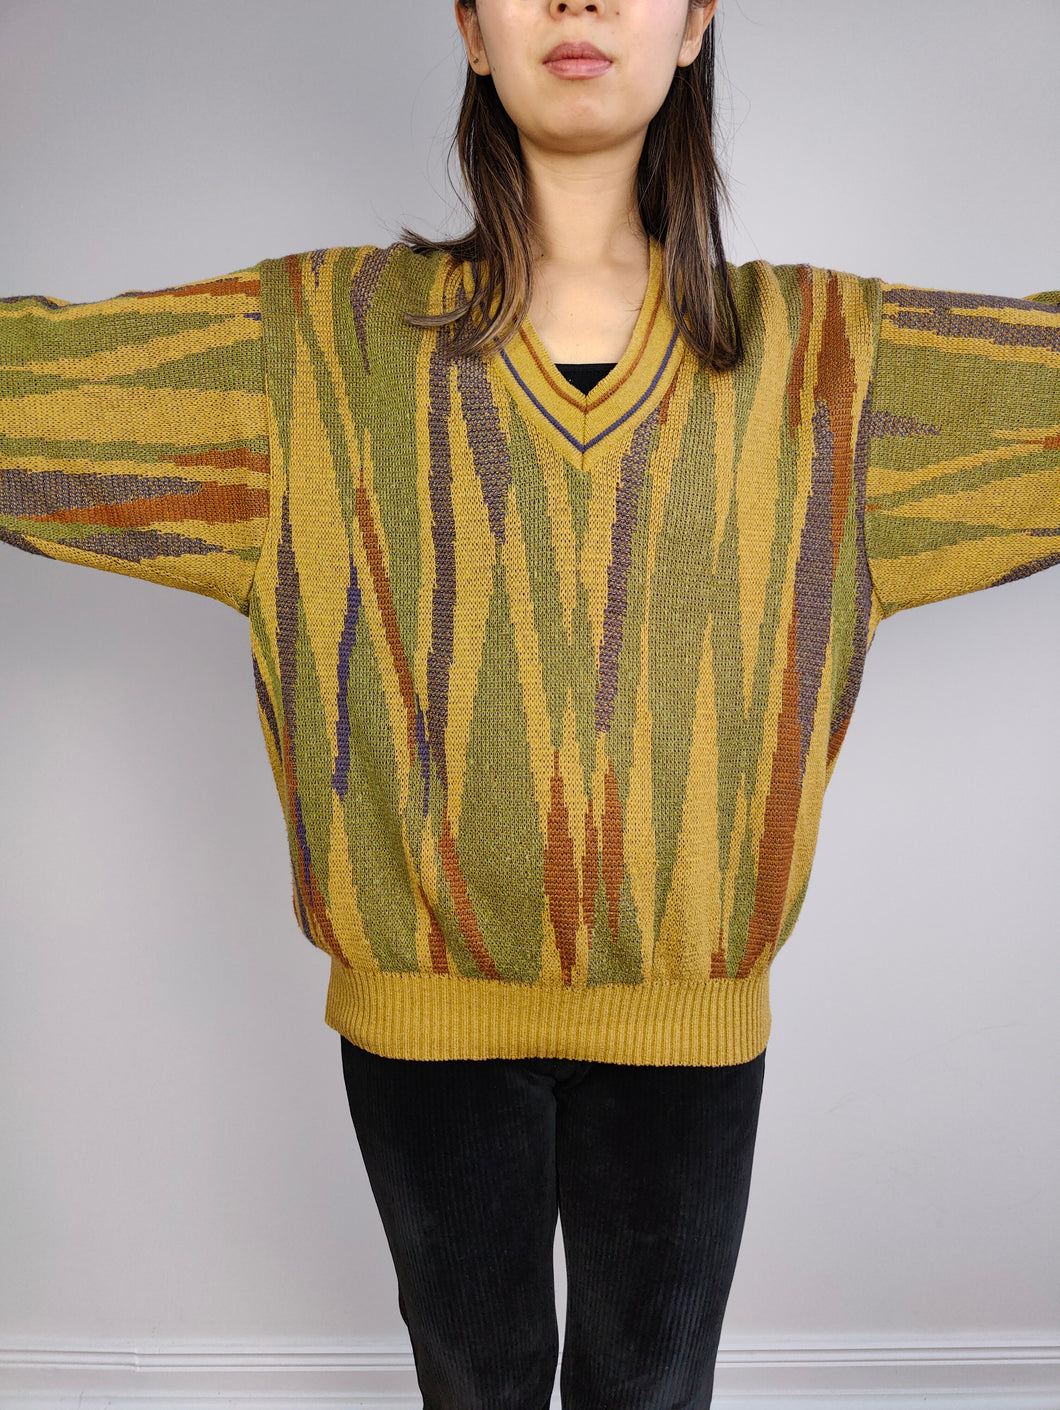 Der gelbgrüne Musterpullover | Vintage Strickpullover Pullover Pullover V-Ausschnitt Druckmuster Salbei Senf Damen Herren Unisex M